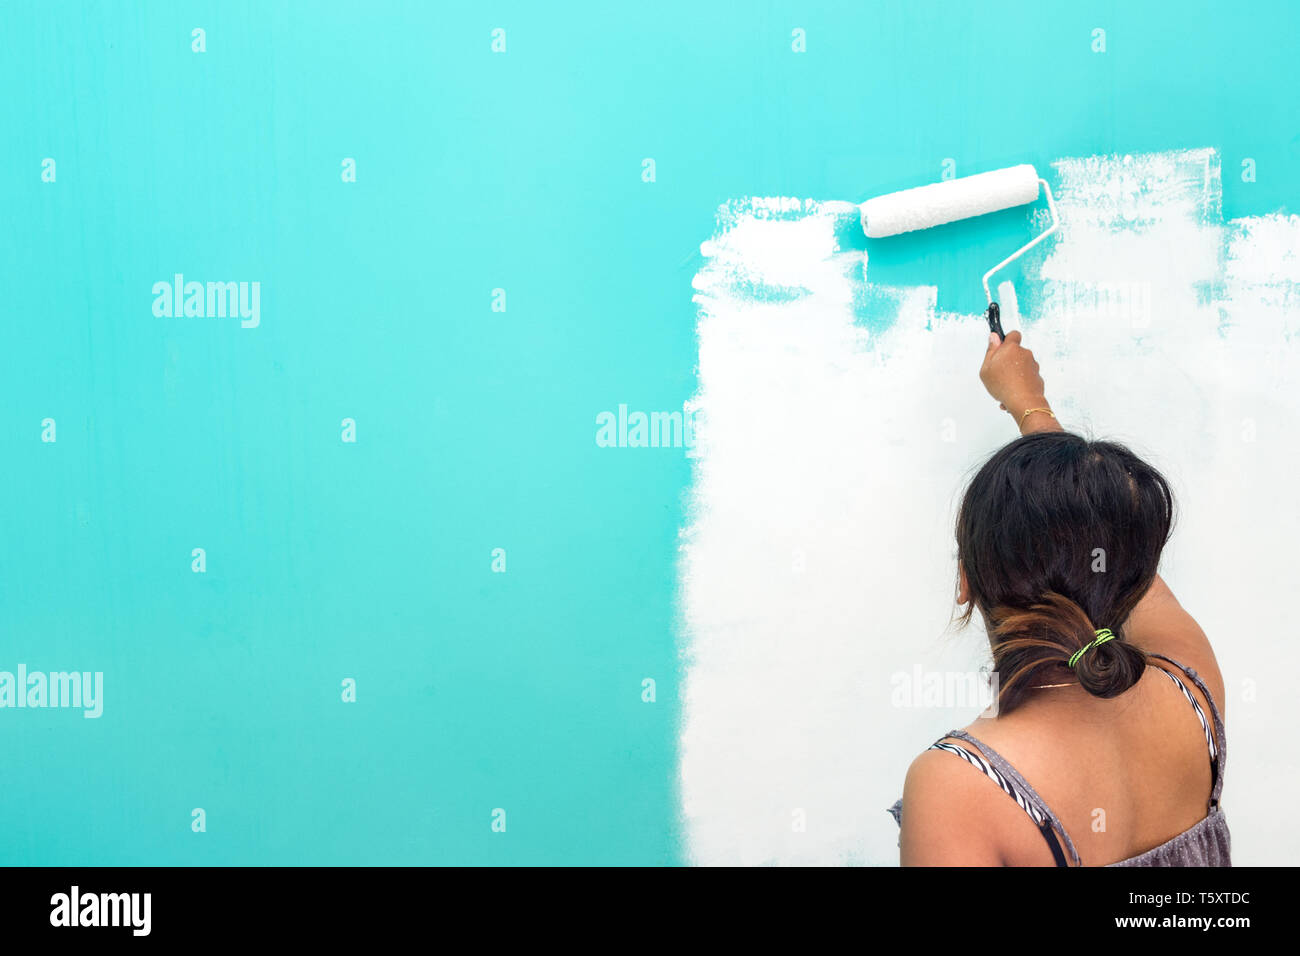 Giovani asiatici non identificabili donna parete di verniciatura con vernice rullo e copiare lo spazio per testo Foto Stock